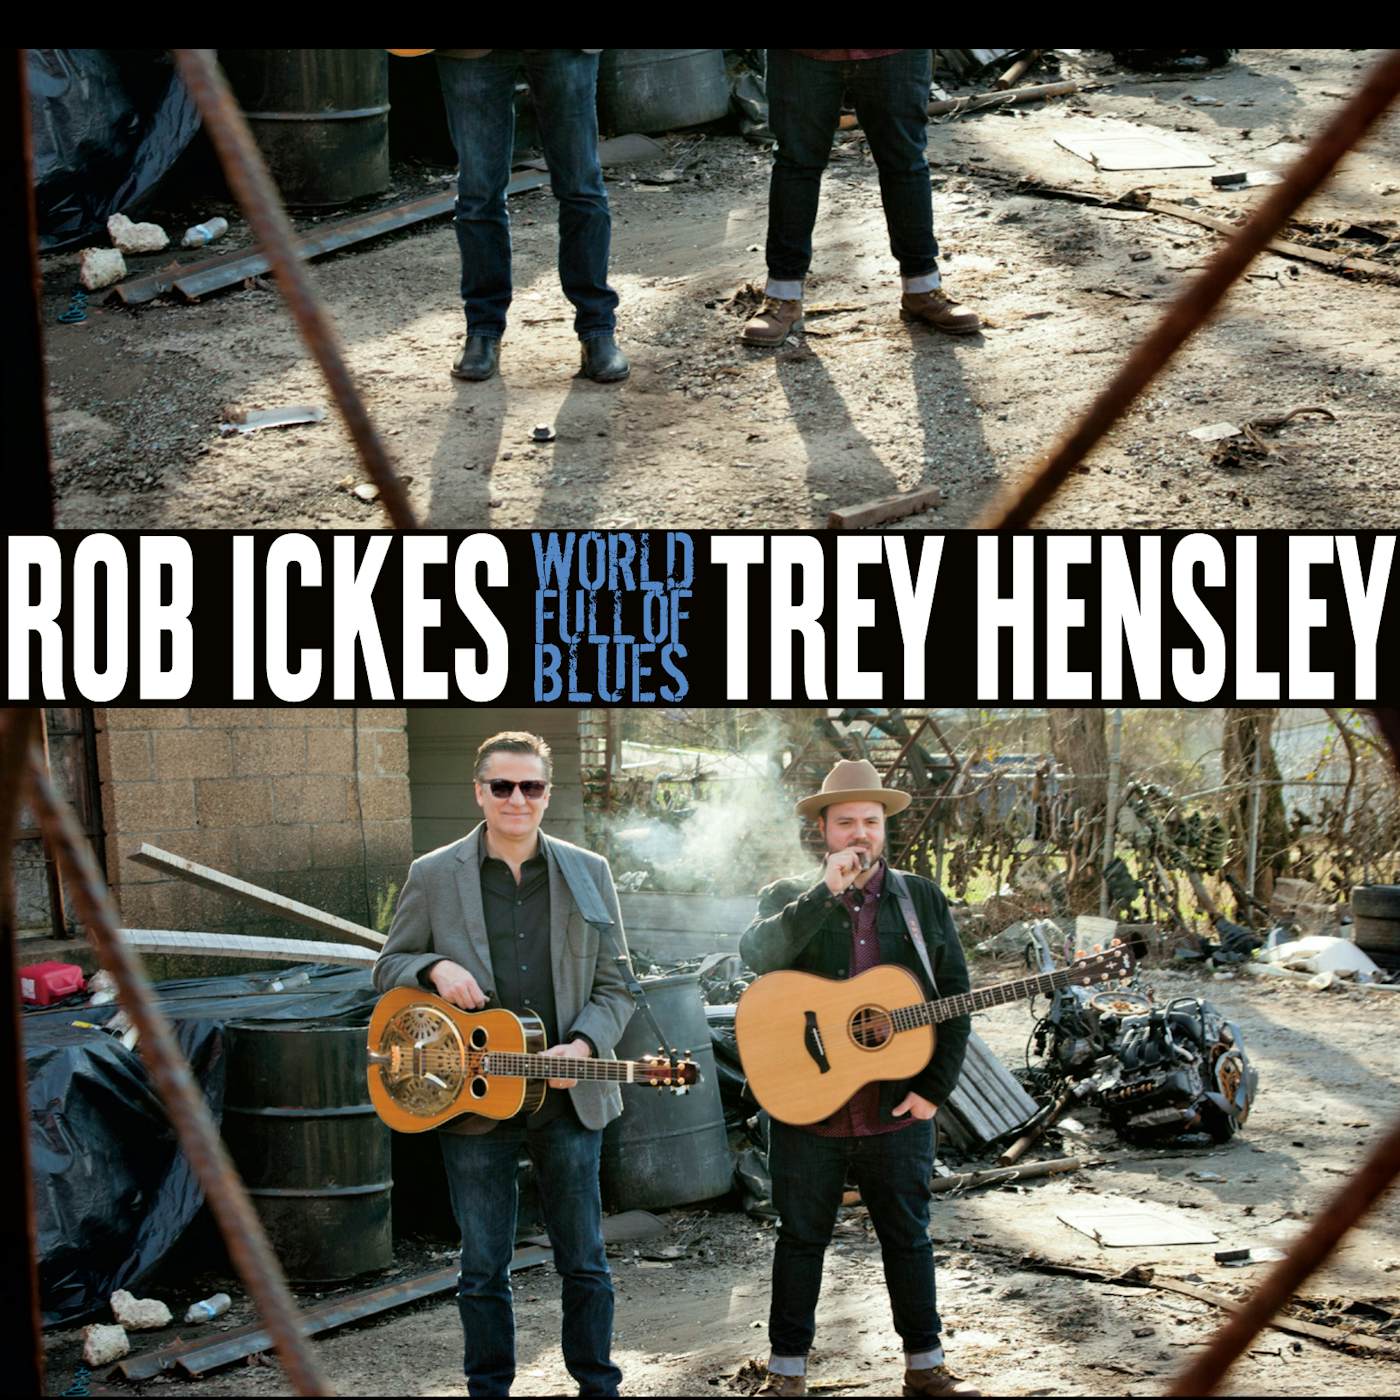 Rob Ickes & Trey Hensley WORLD FULL OF BLUES CD